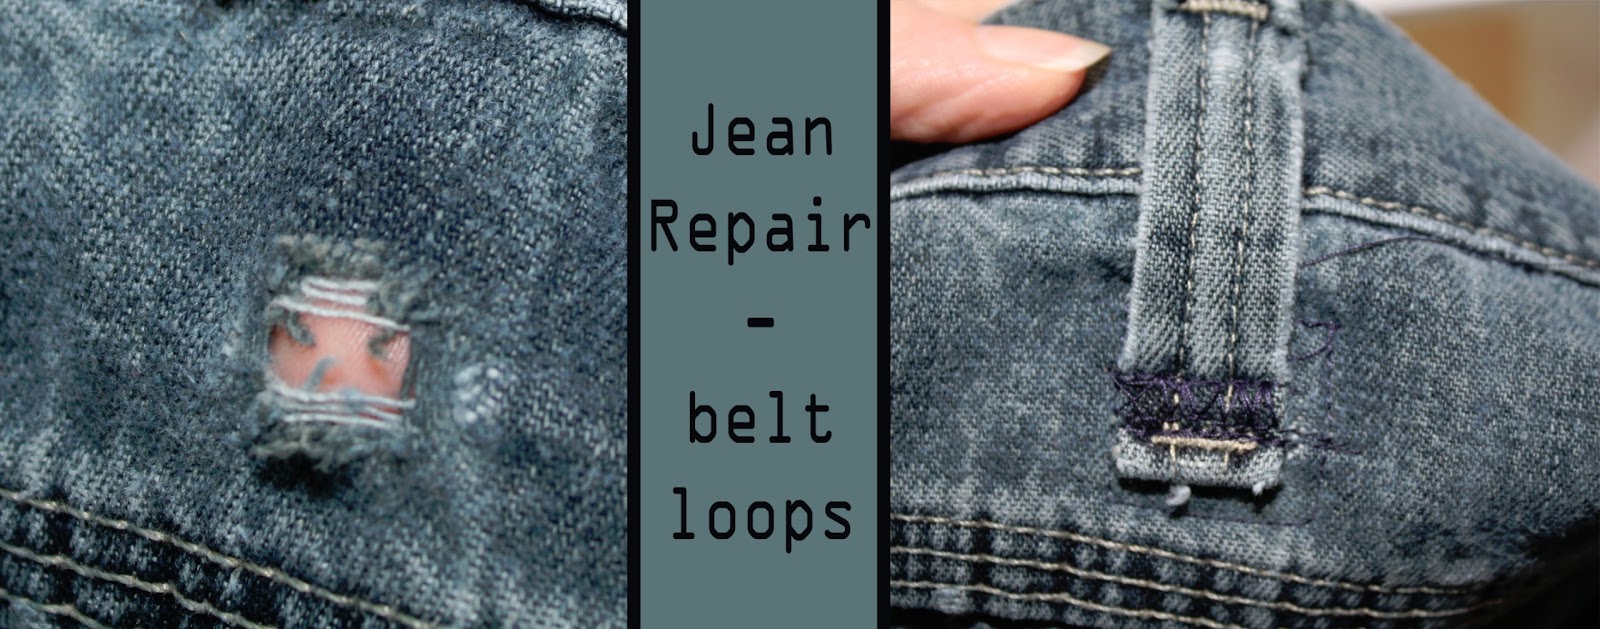 Love my Lists: Jean Repair - Belt Loops